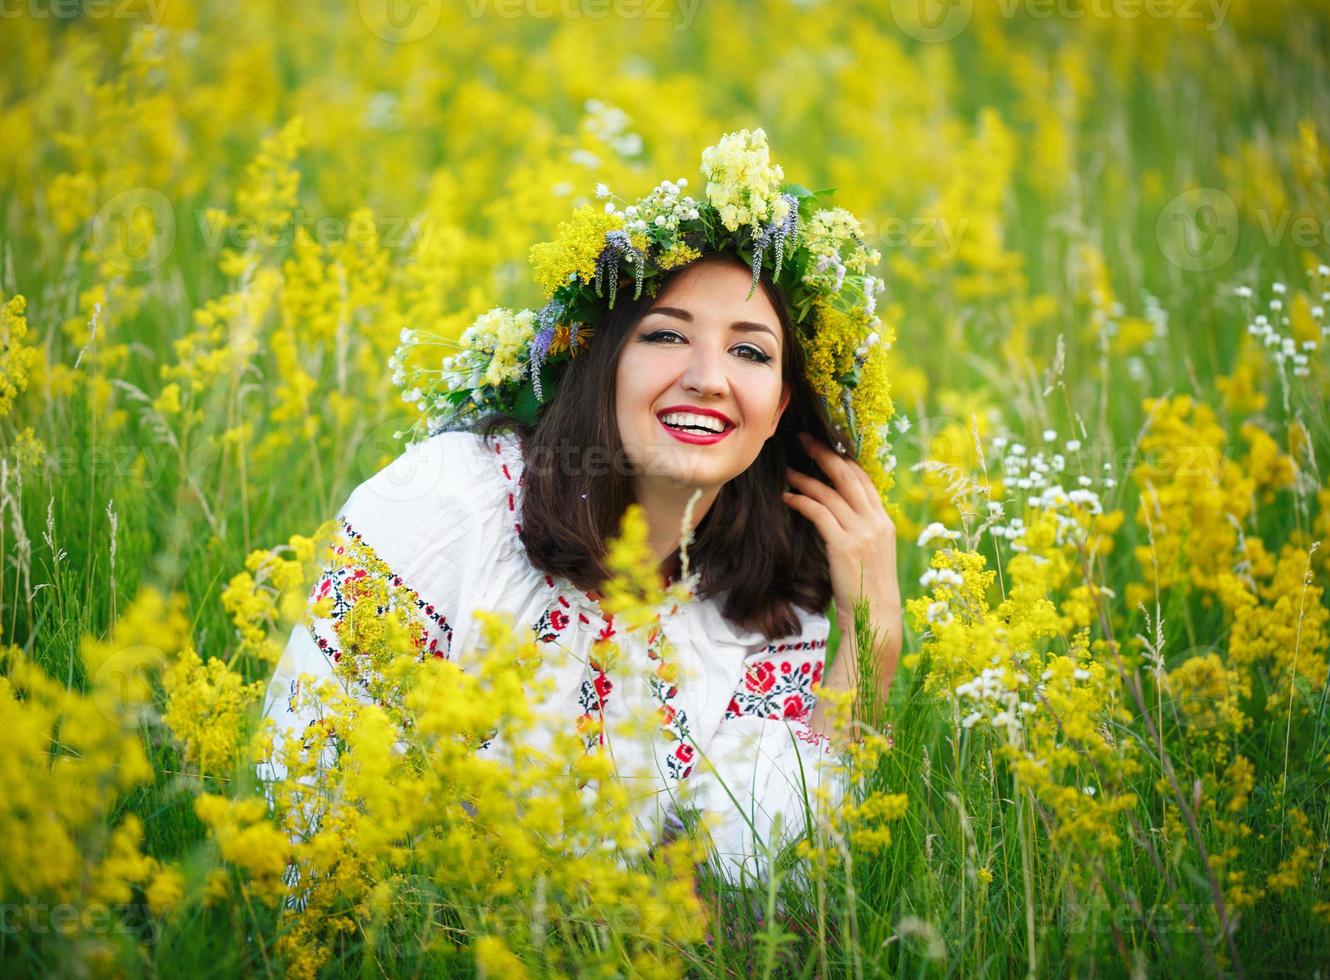 joven sonriente niña en ucranio disfraz con un guirnalda en su cabeza en un prado foto